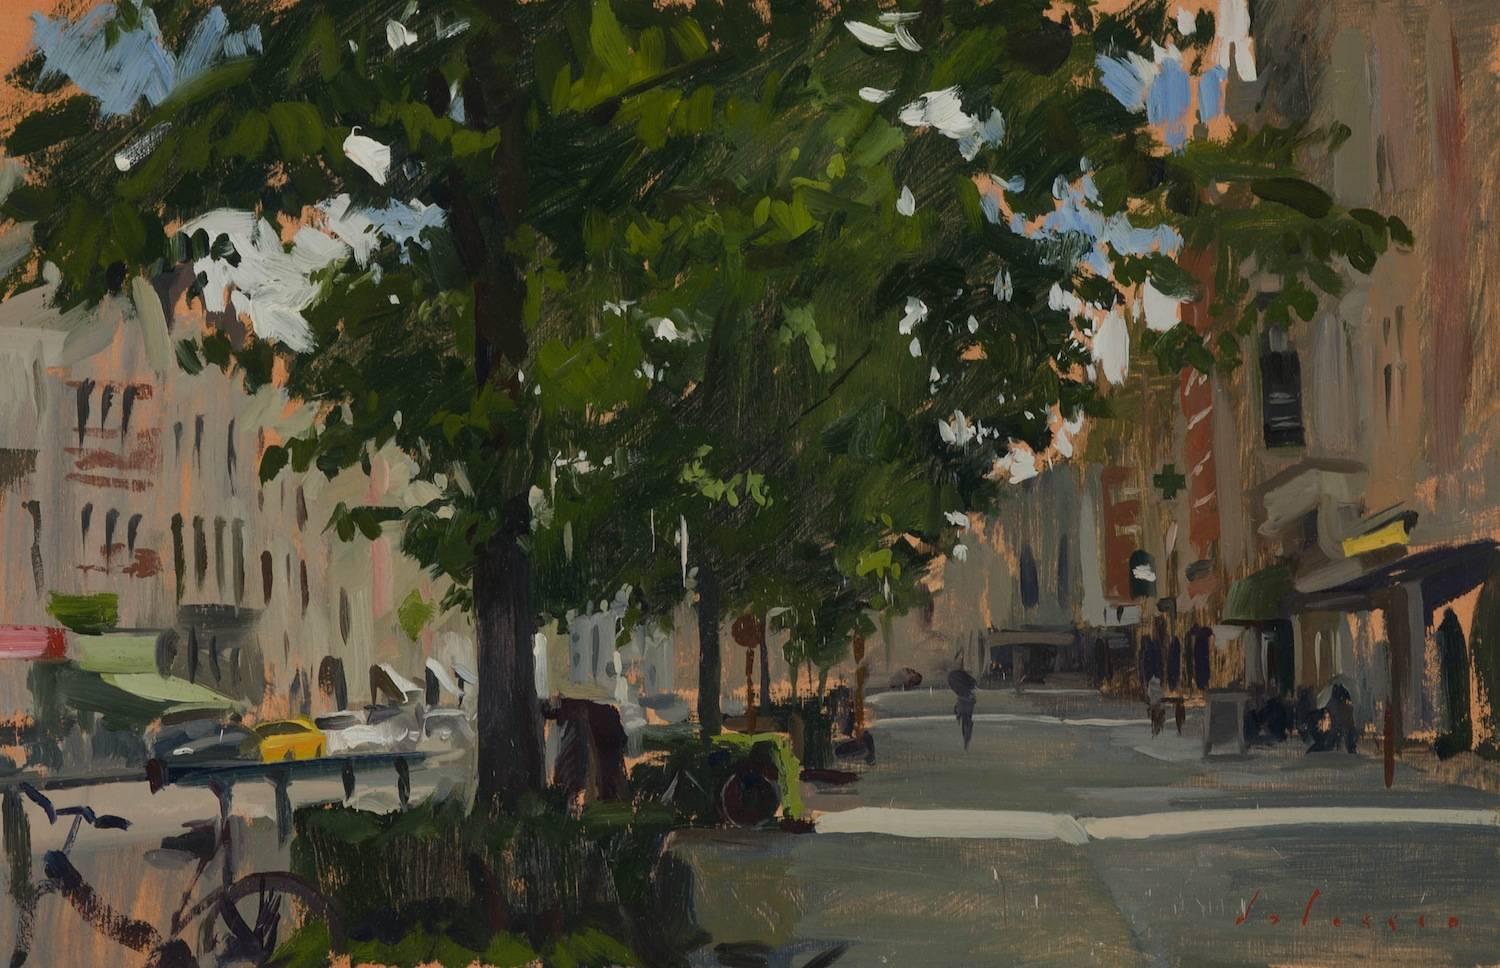 "Belgique" peinture contemporaine en plein air d'un paysage de rue européen, tons neutres.